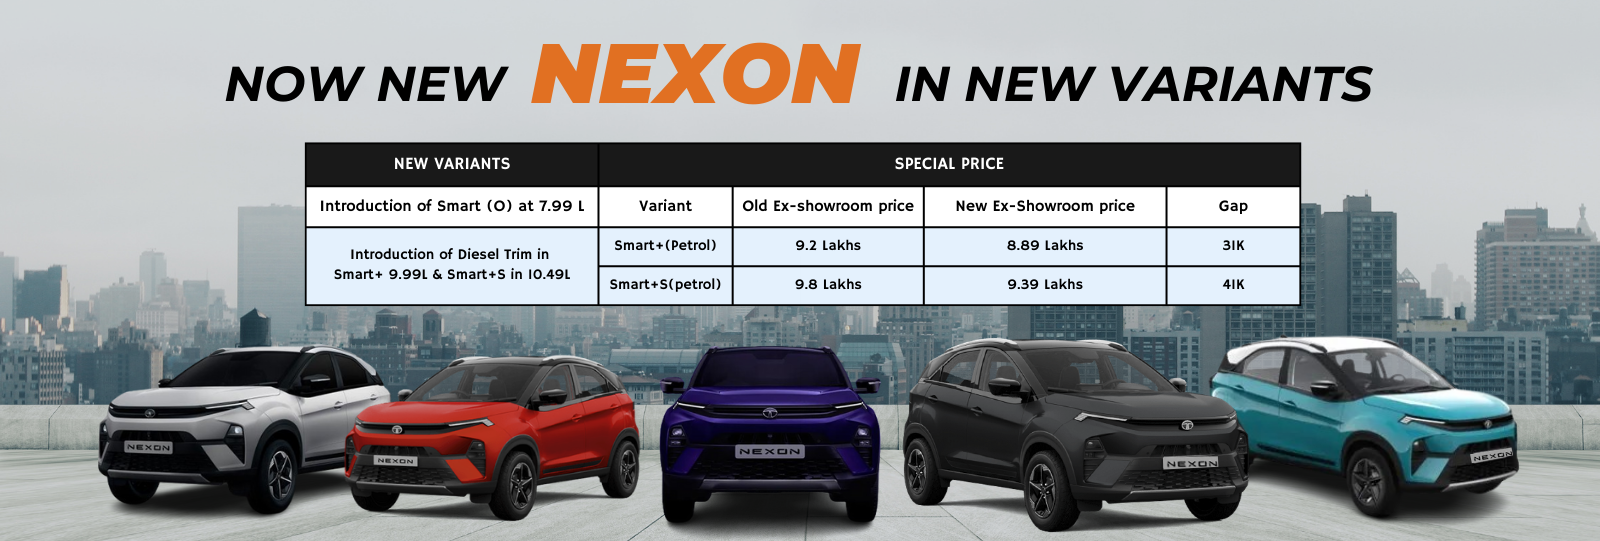 New Nexon price